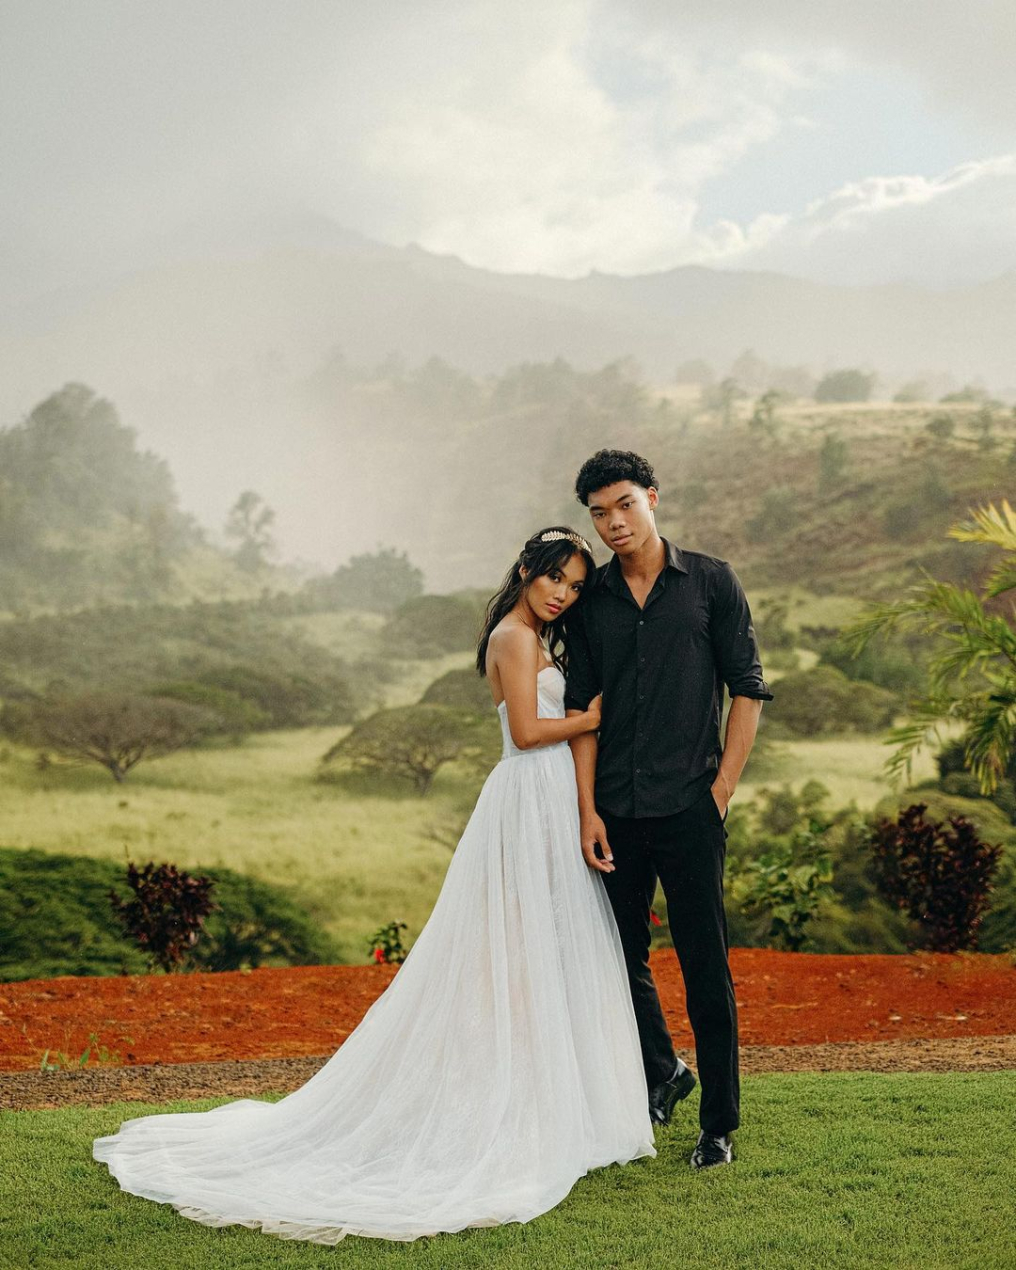 ANART Wedding Wedding Photographer In Hawaii ❤️, 48% OFF